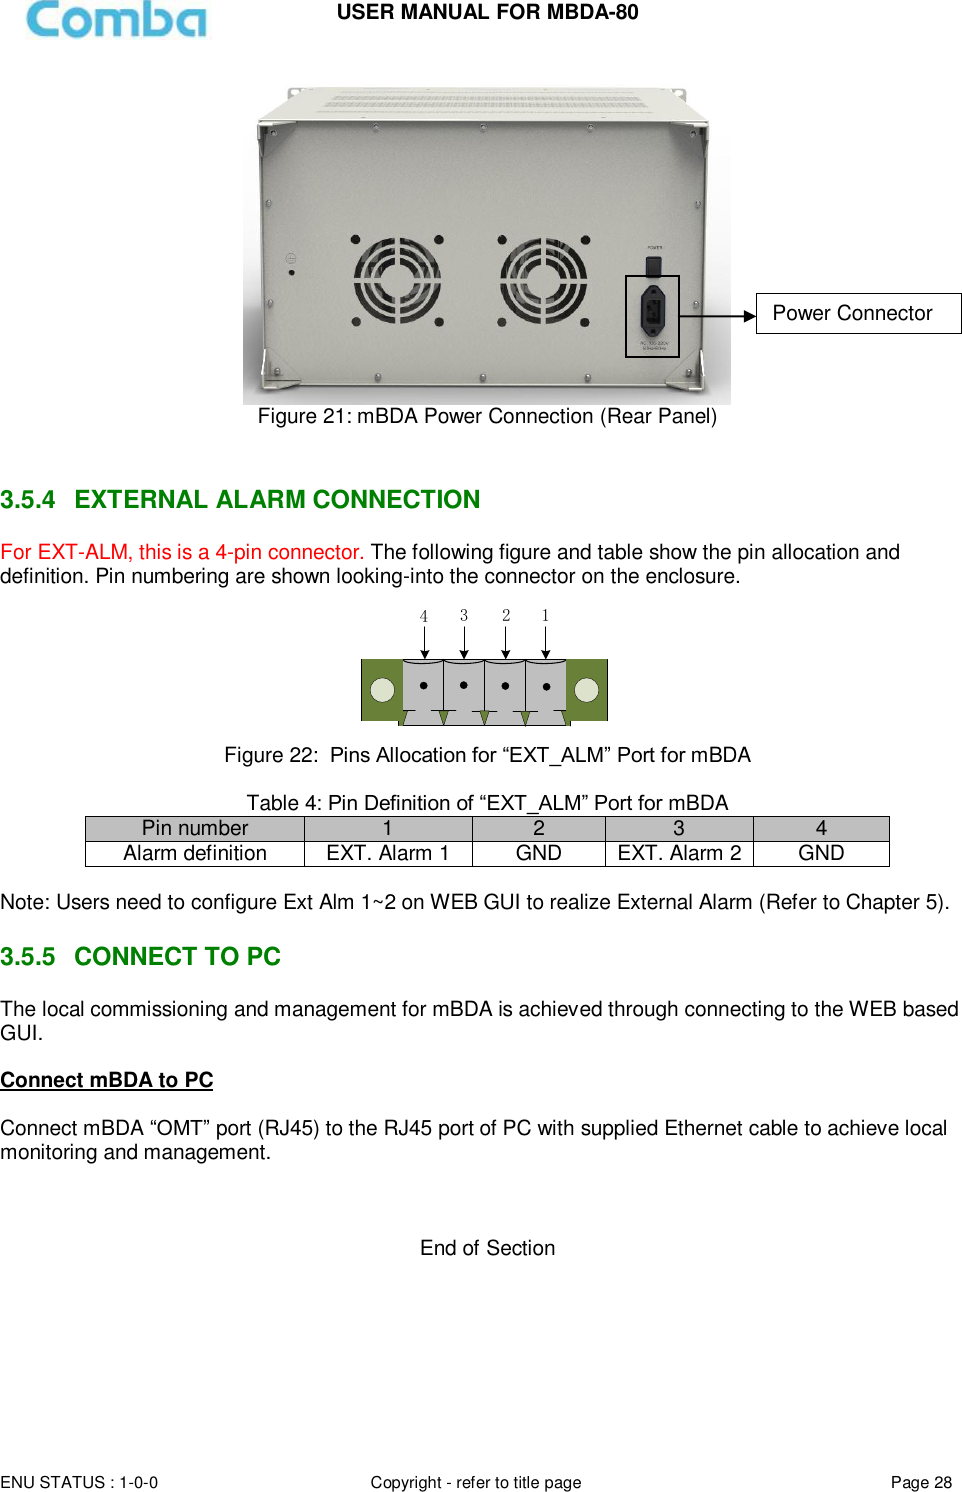 Page 28 of Comba Telecom MBDA-80 mBDA Band Seletive Repeater User Manual 